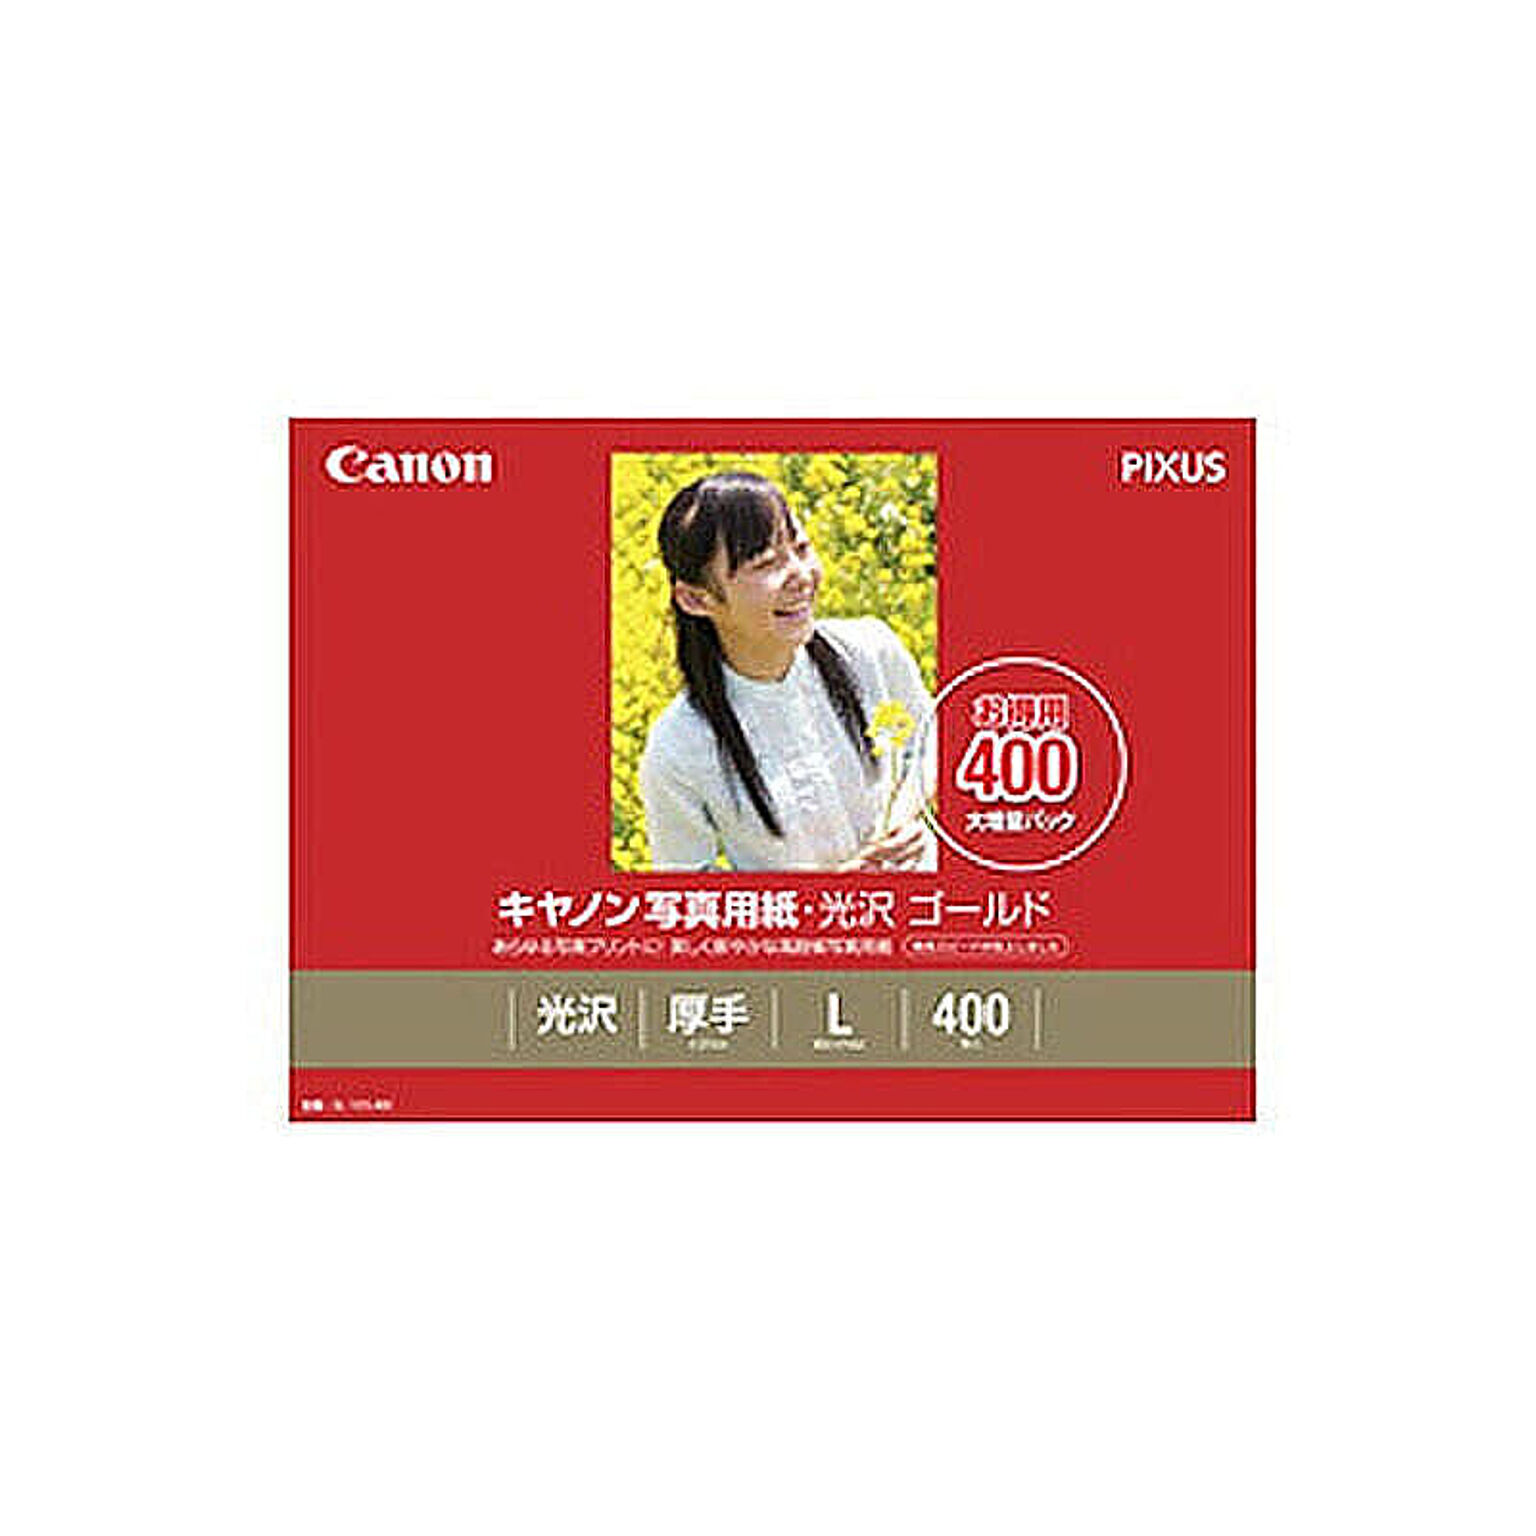 キヤノン Canon 写真用紙・光沢 ゴールド L判 400枚 GL-101L400 管理No. 4960999484082